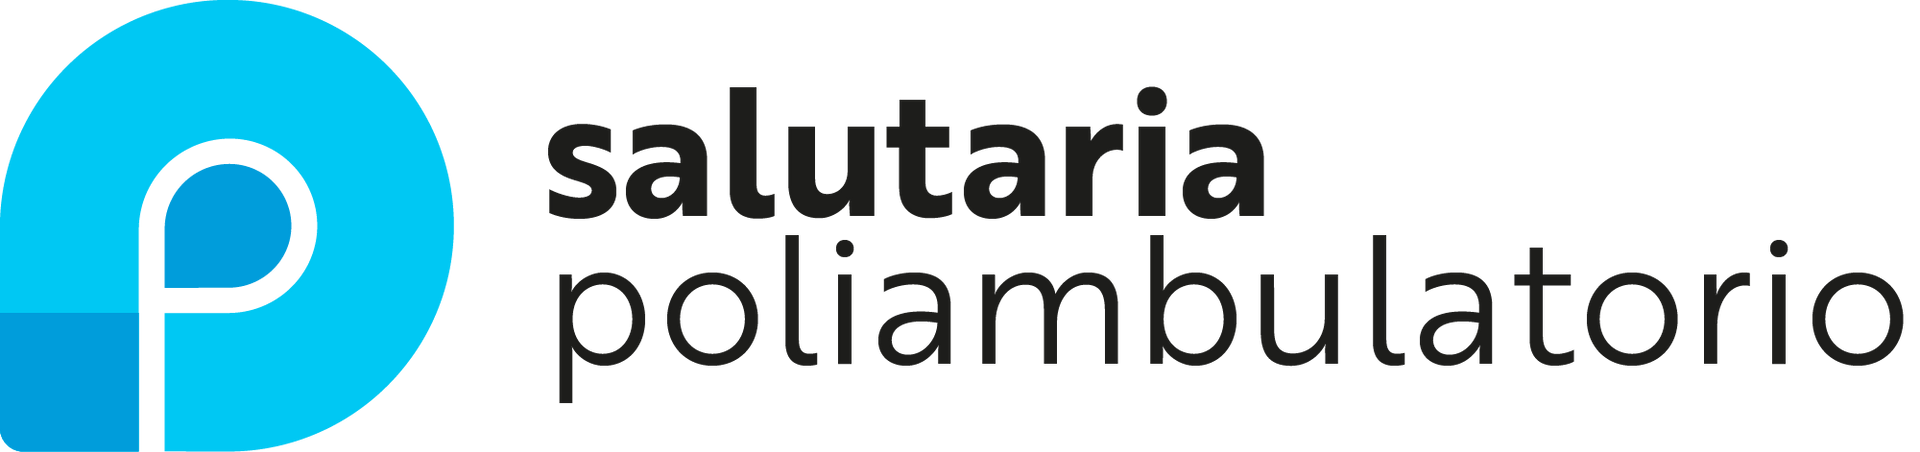 Un logo bianco e blu per un poliambulatorio Saluria